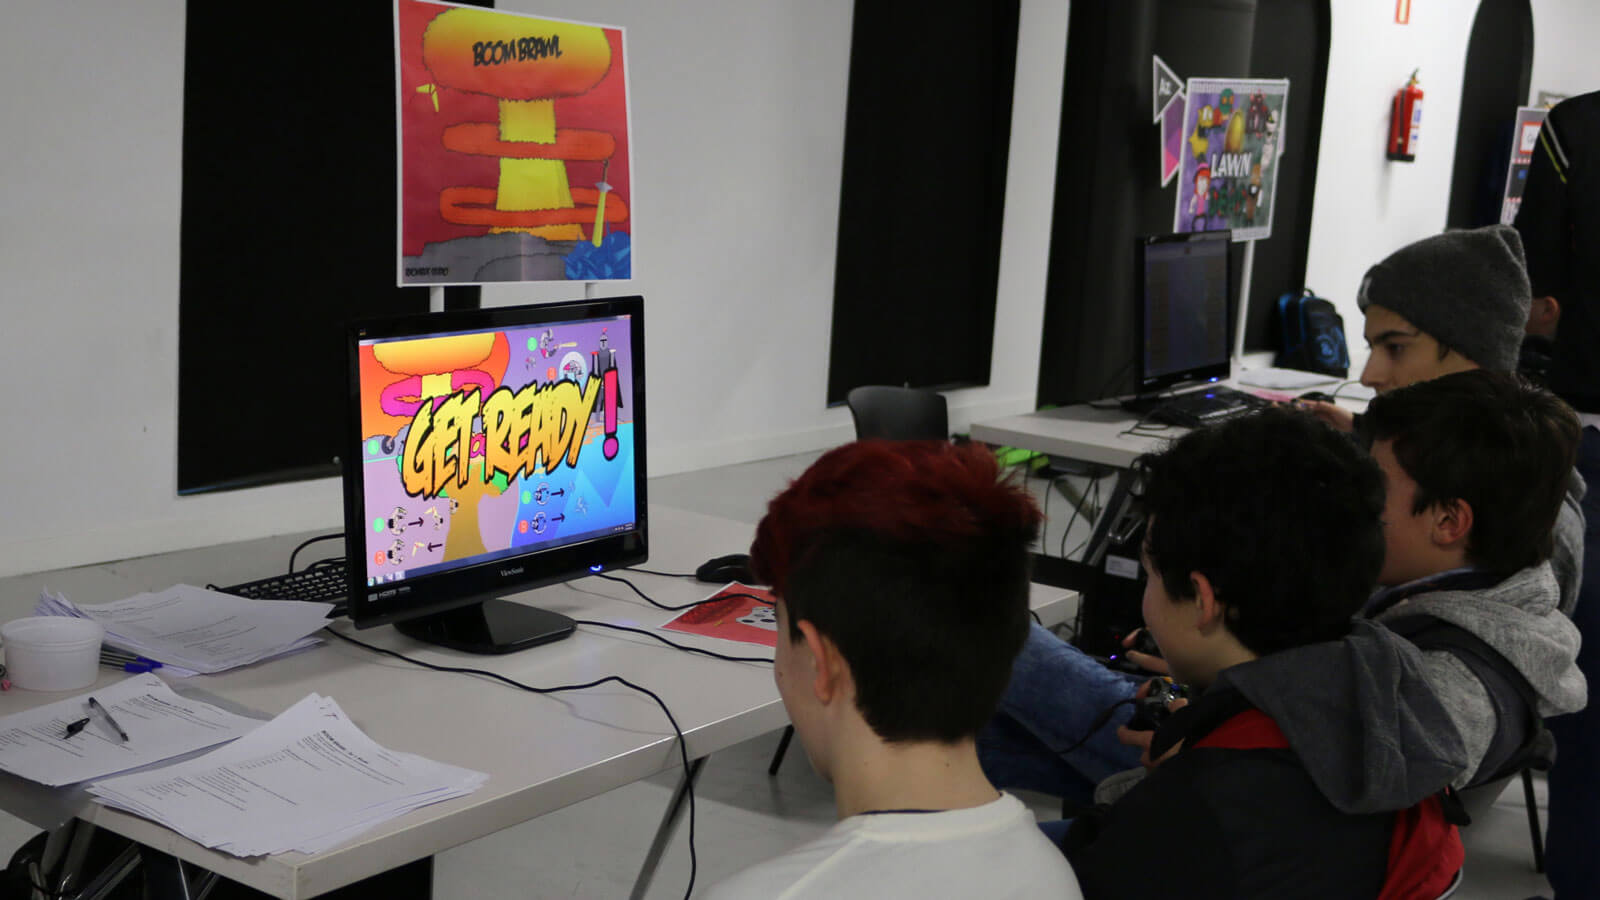 Multiples jugadores juegan a un juego multijugador en una sola pantalla﻿﻿.